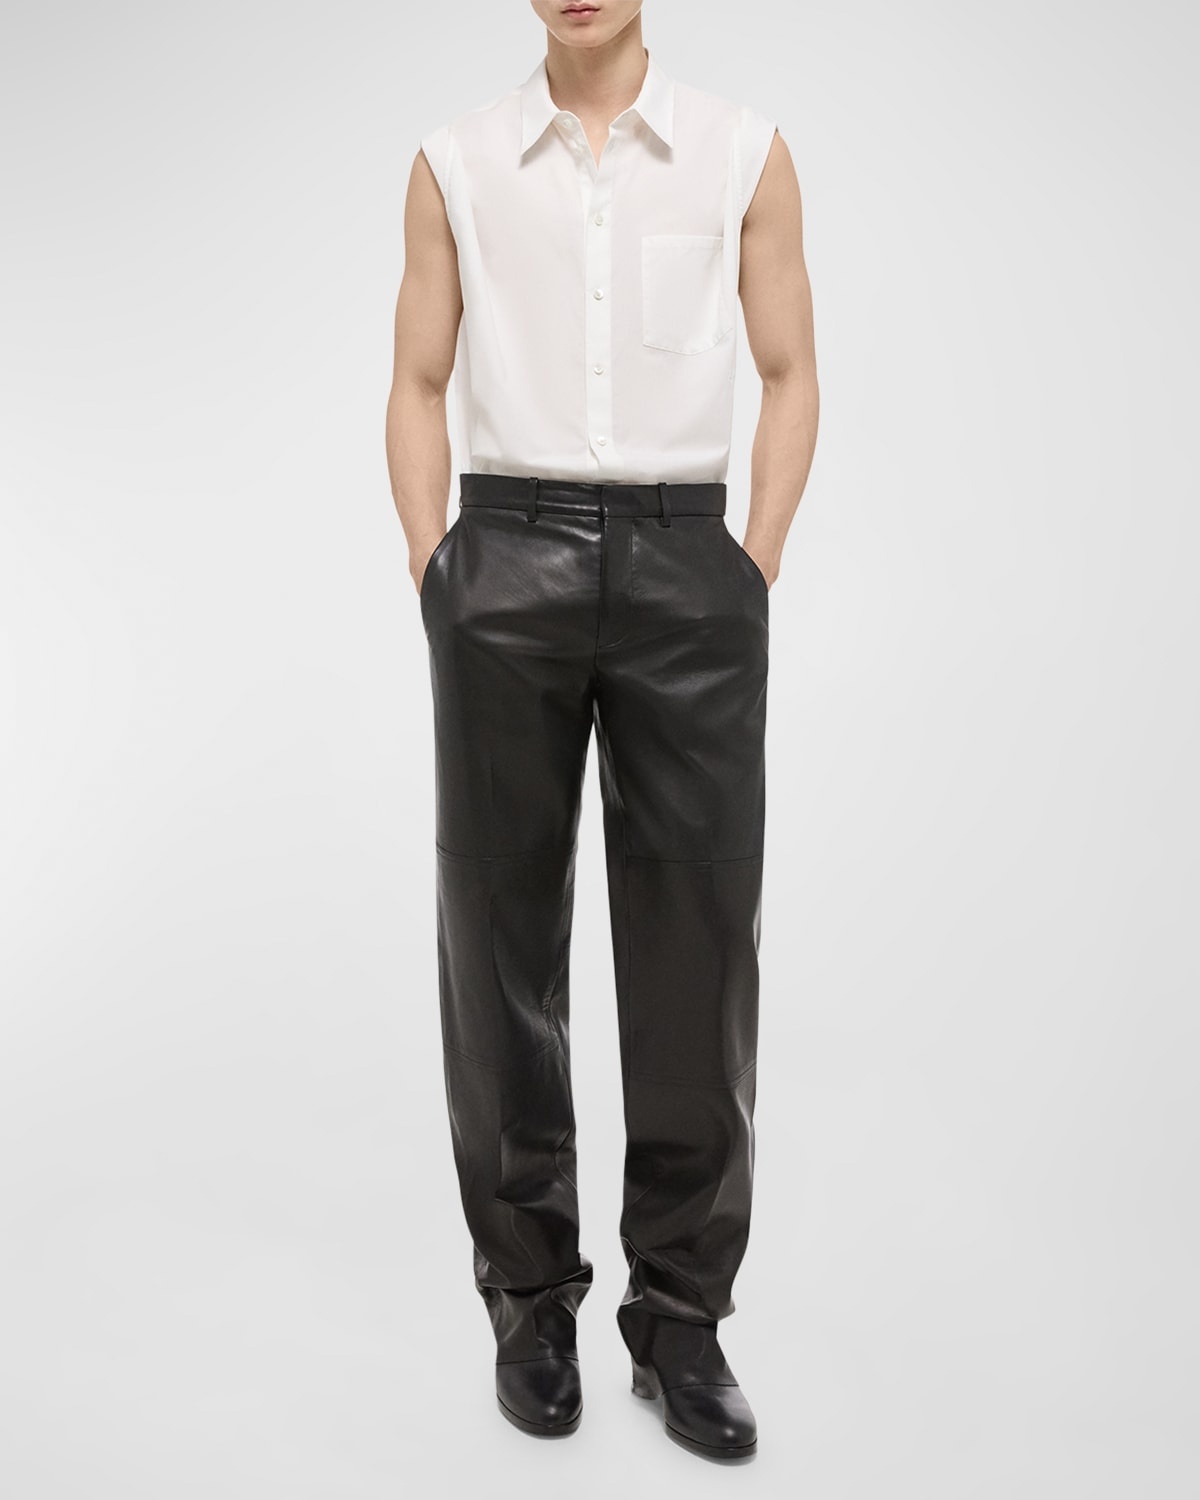 Men's Sleeveless Button-Down Shirt - 3